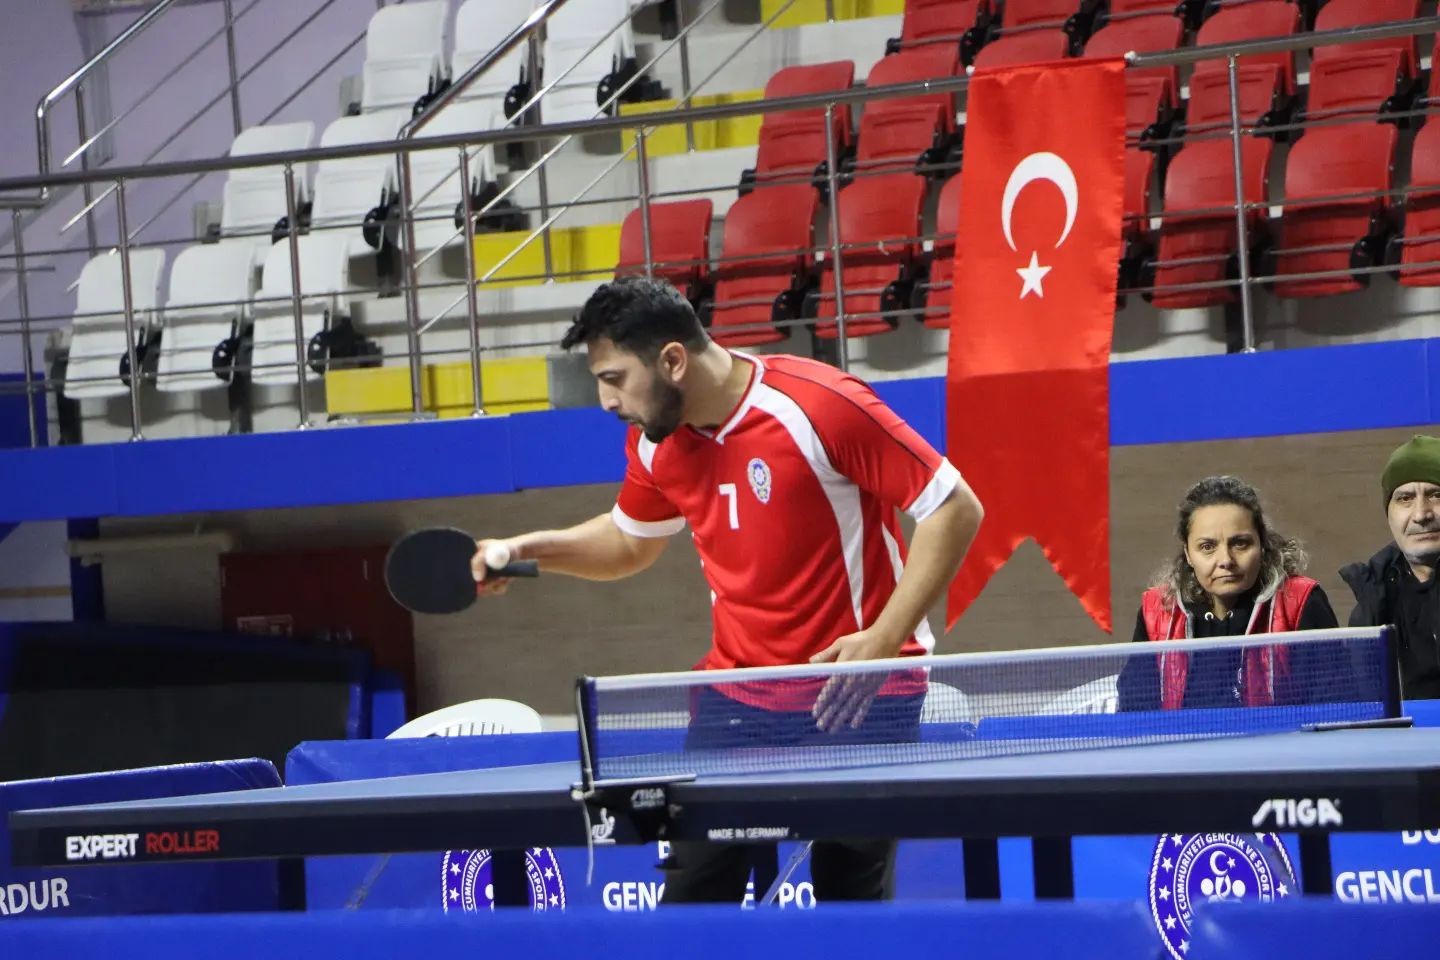 Kurumlar arası masa tenisinde emniyet personeli birinci oldu #burdur